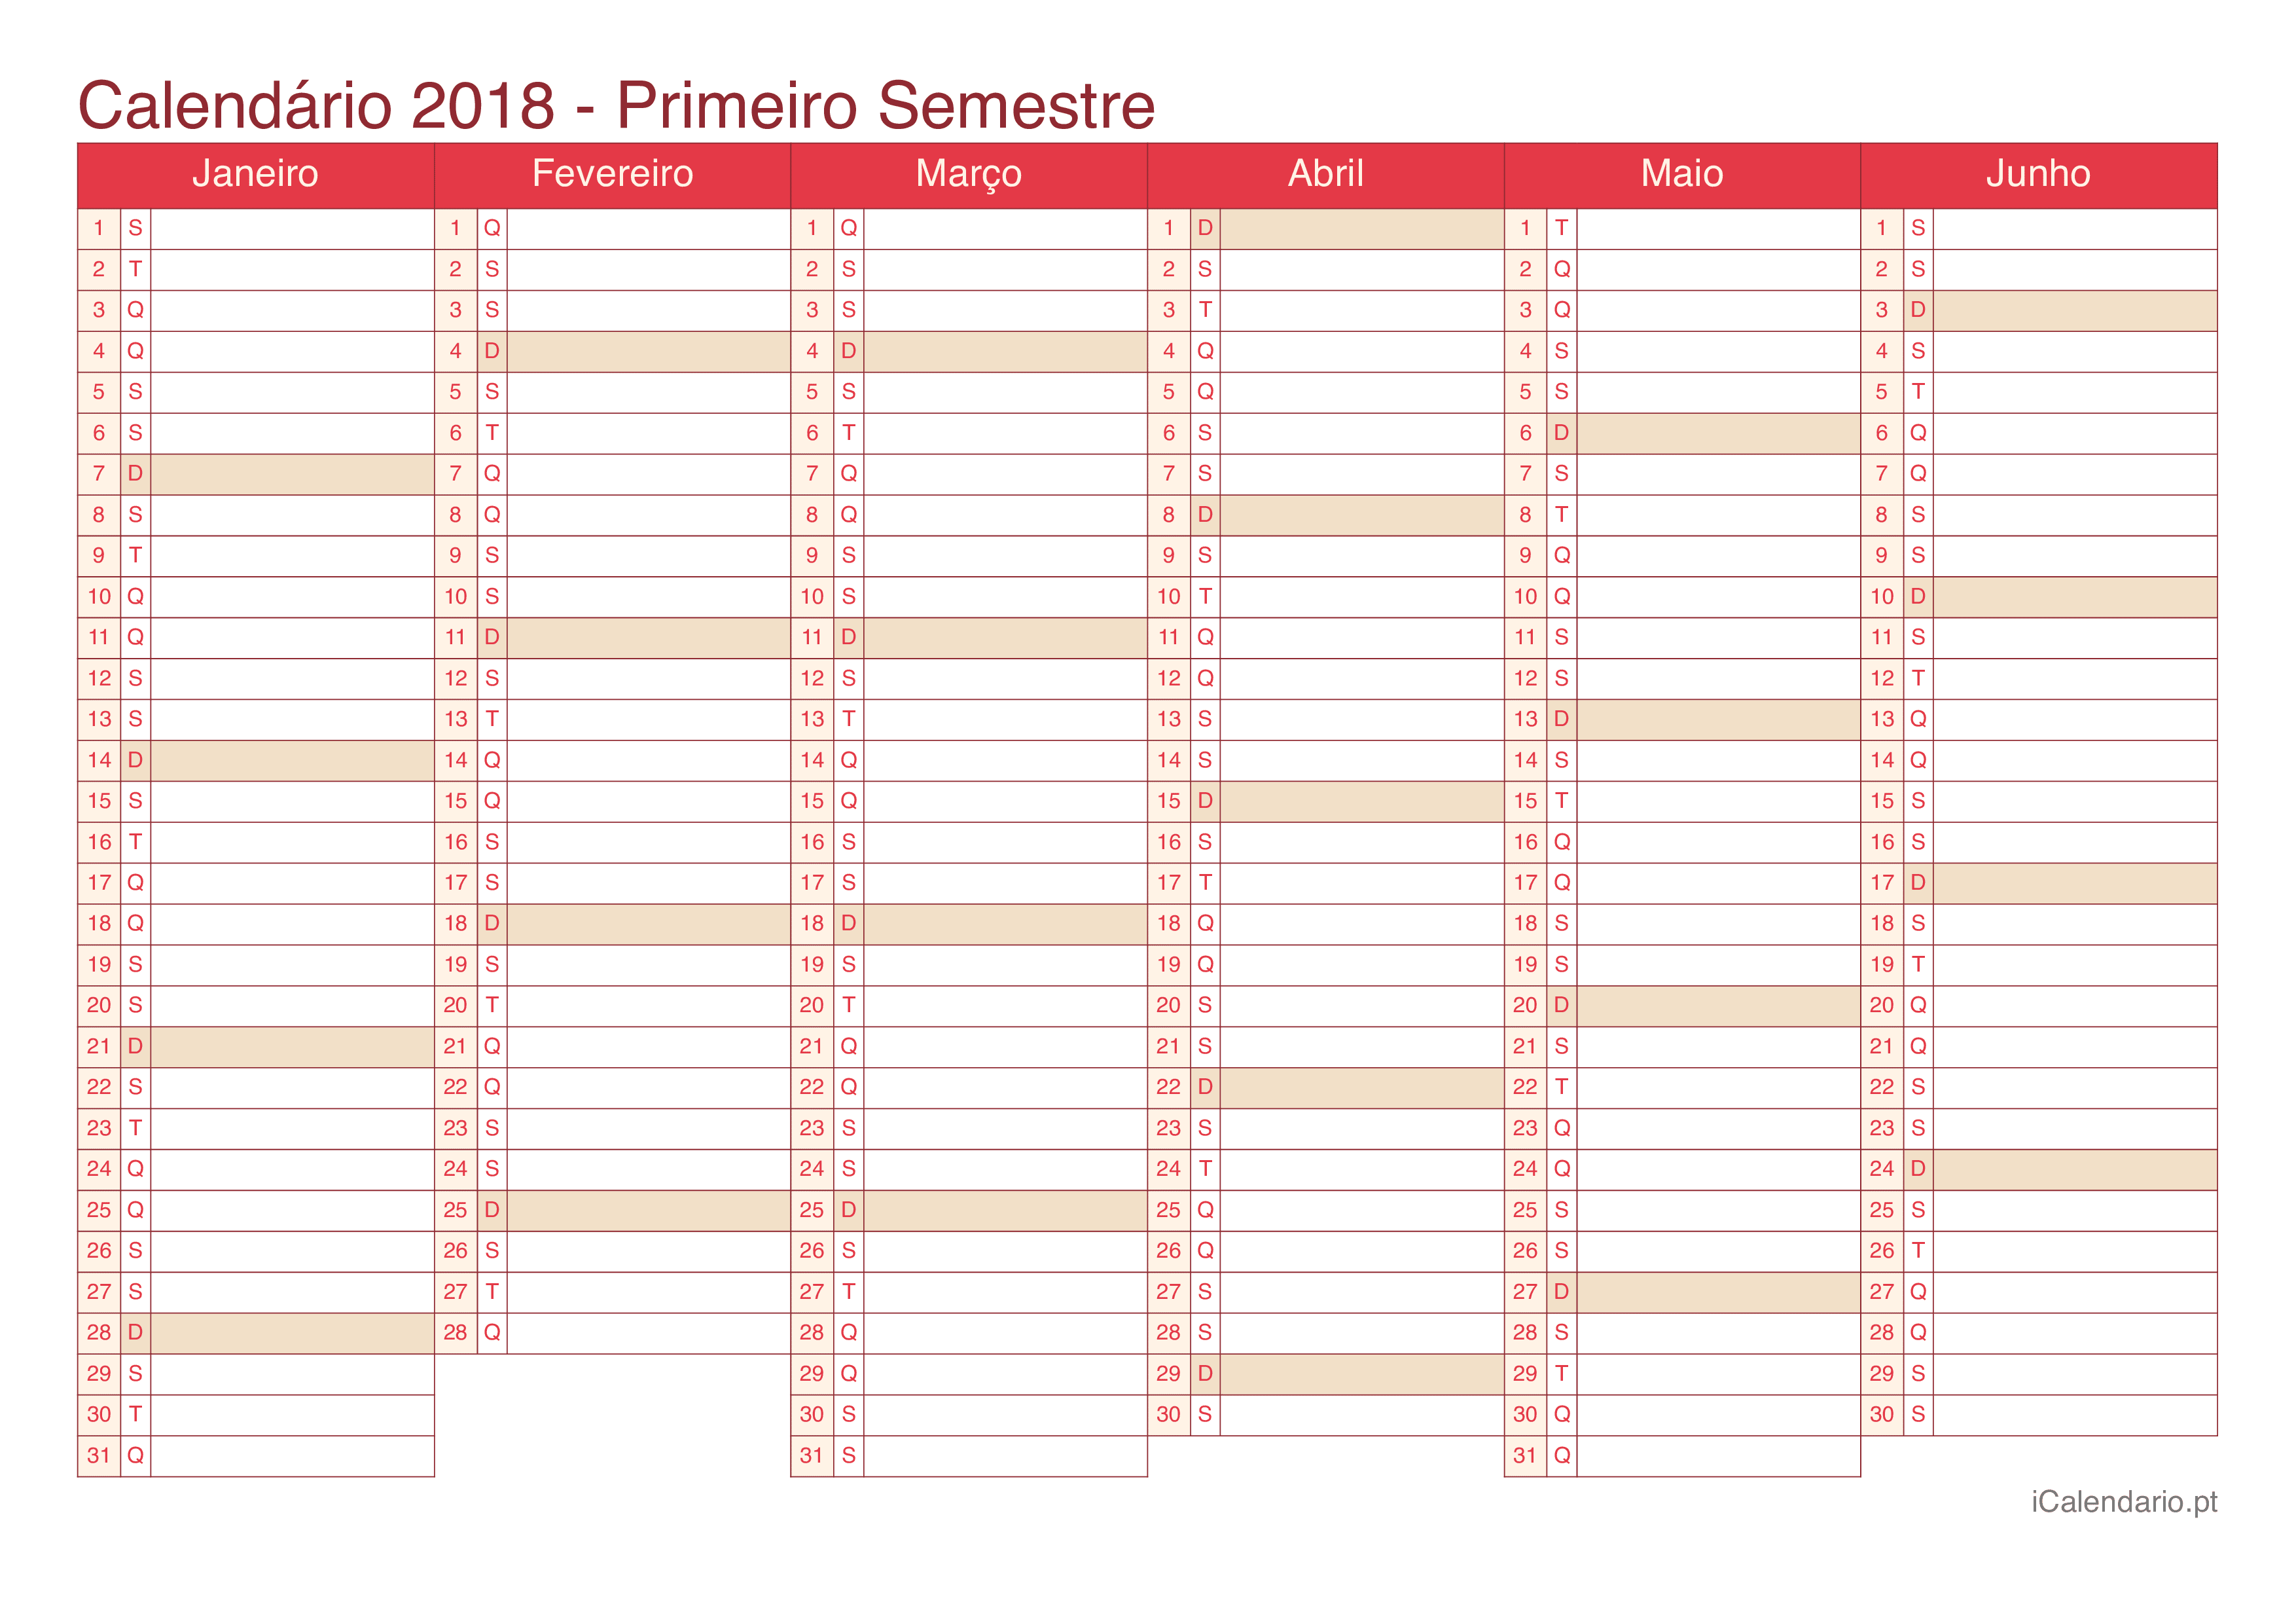 Calendário por semestre 2018 - Cherry